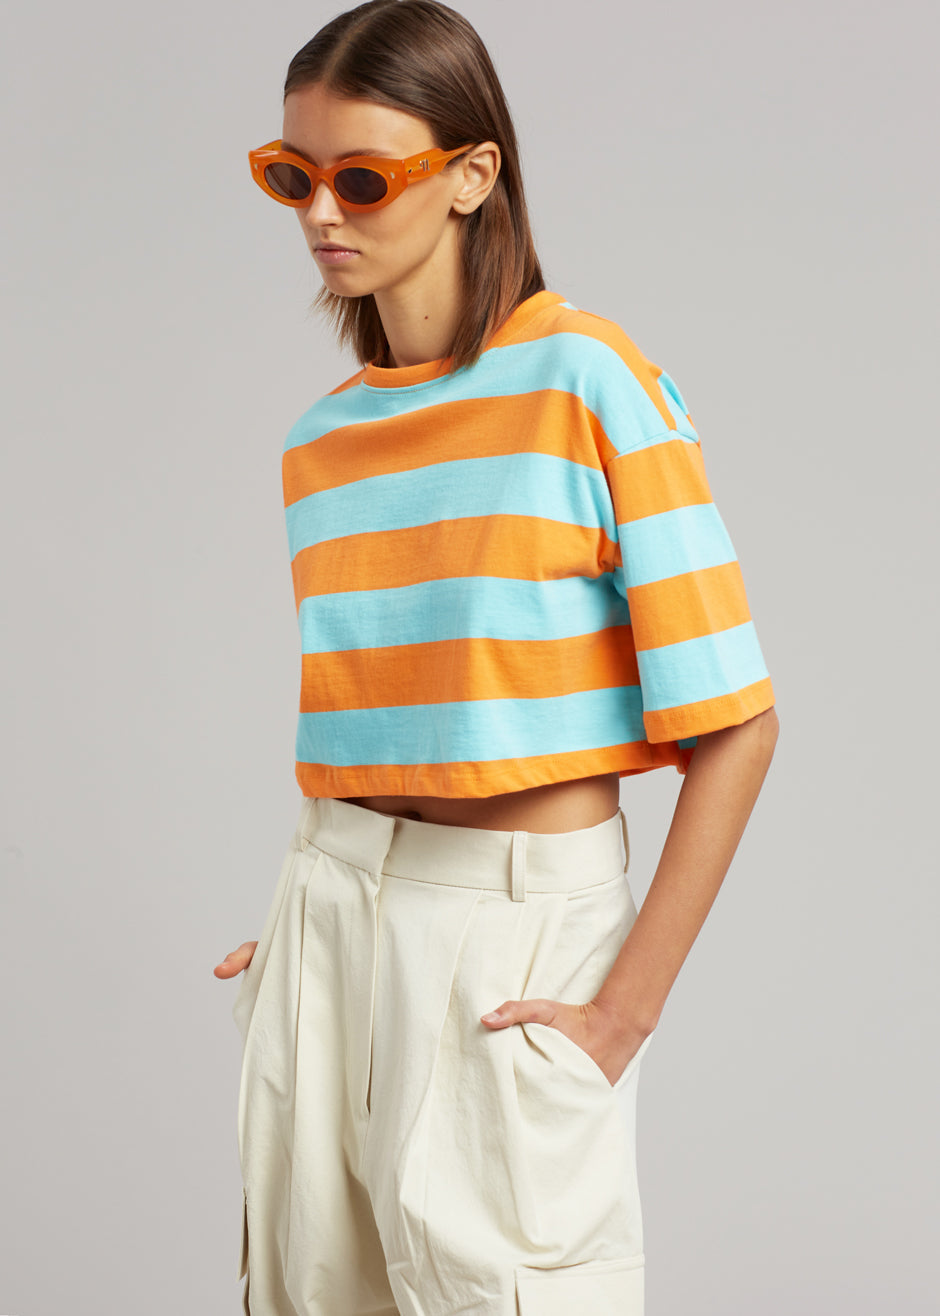 Karina Cropped T-Shirt - Turquoise/Bright Orange - 5